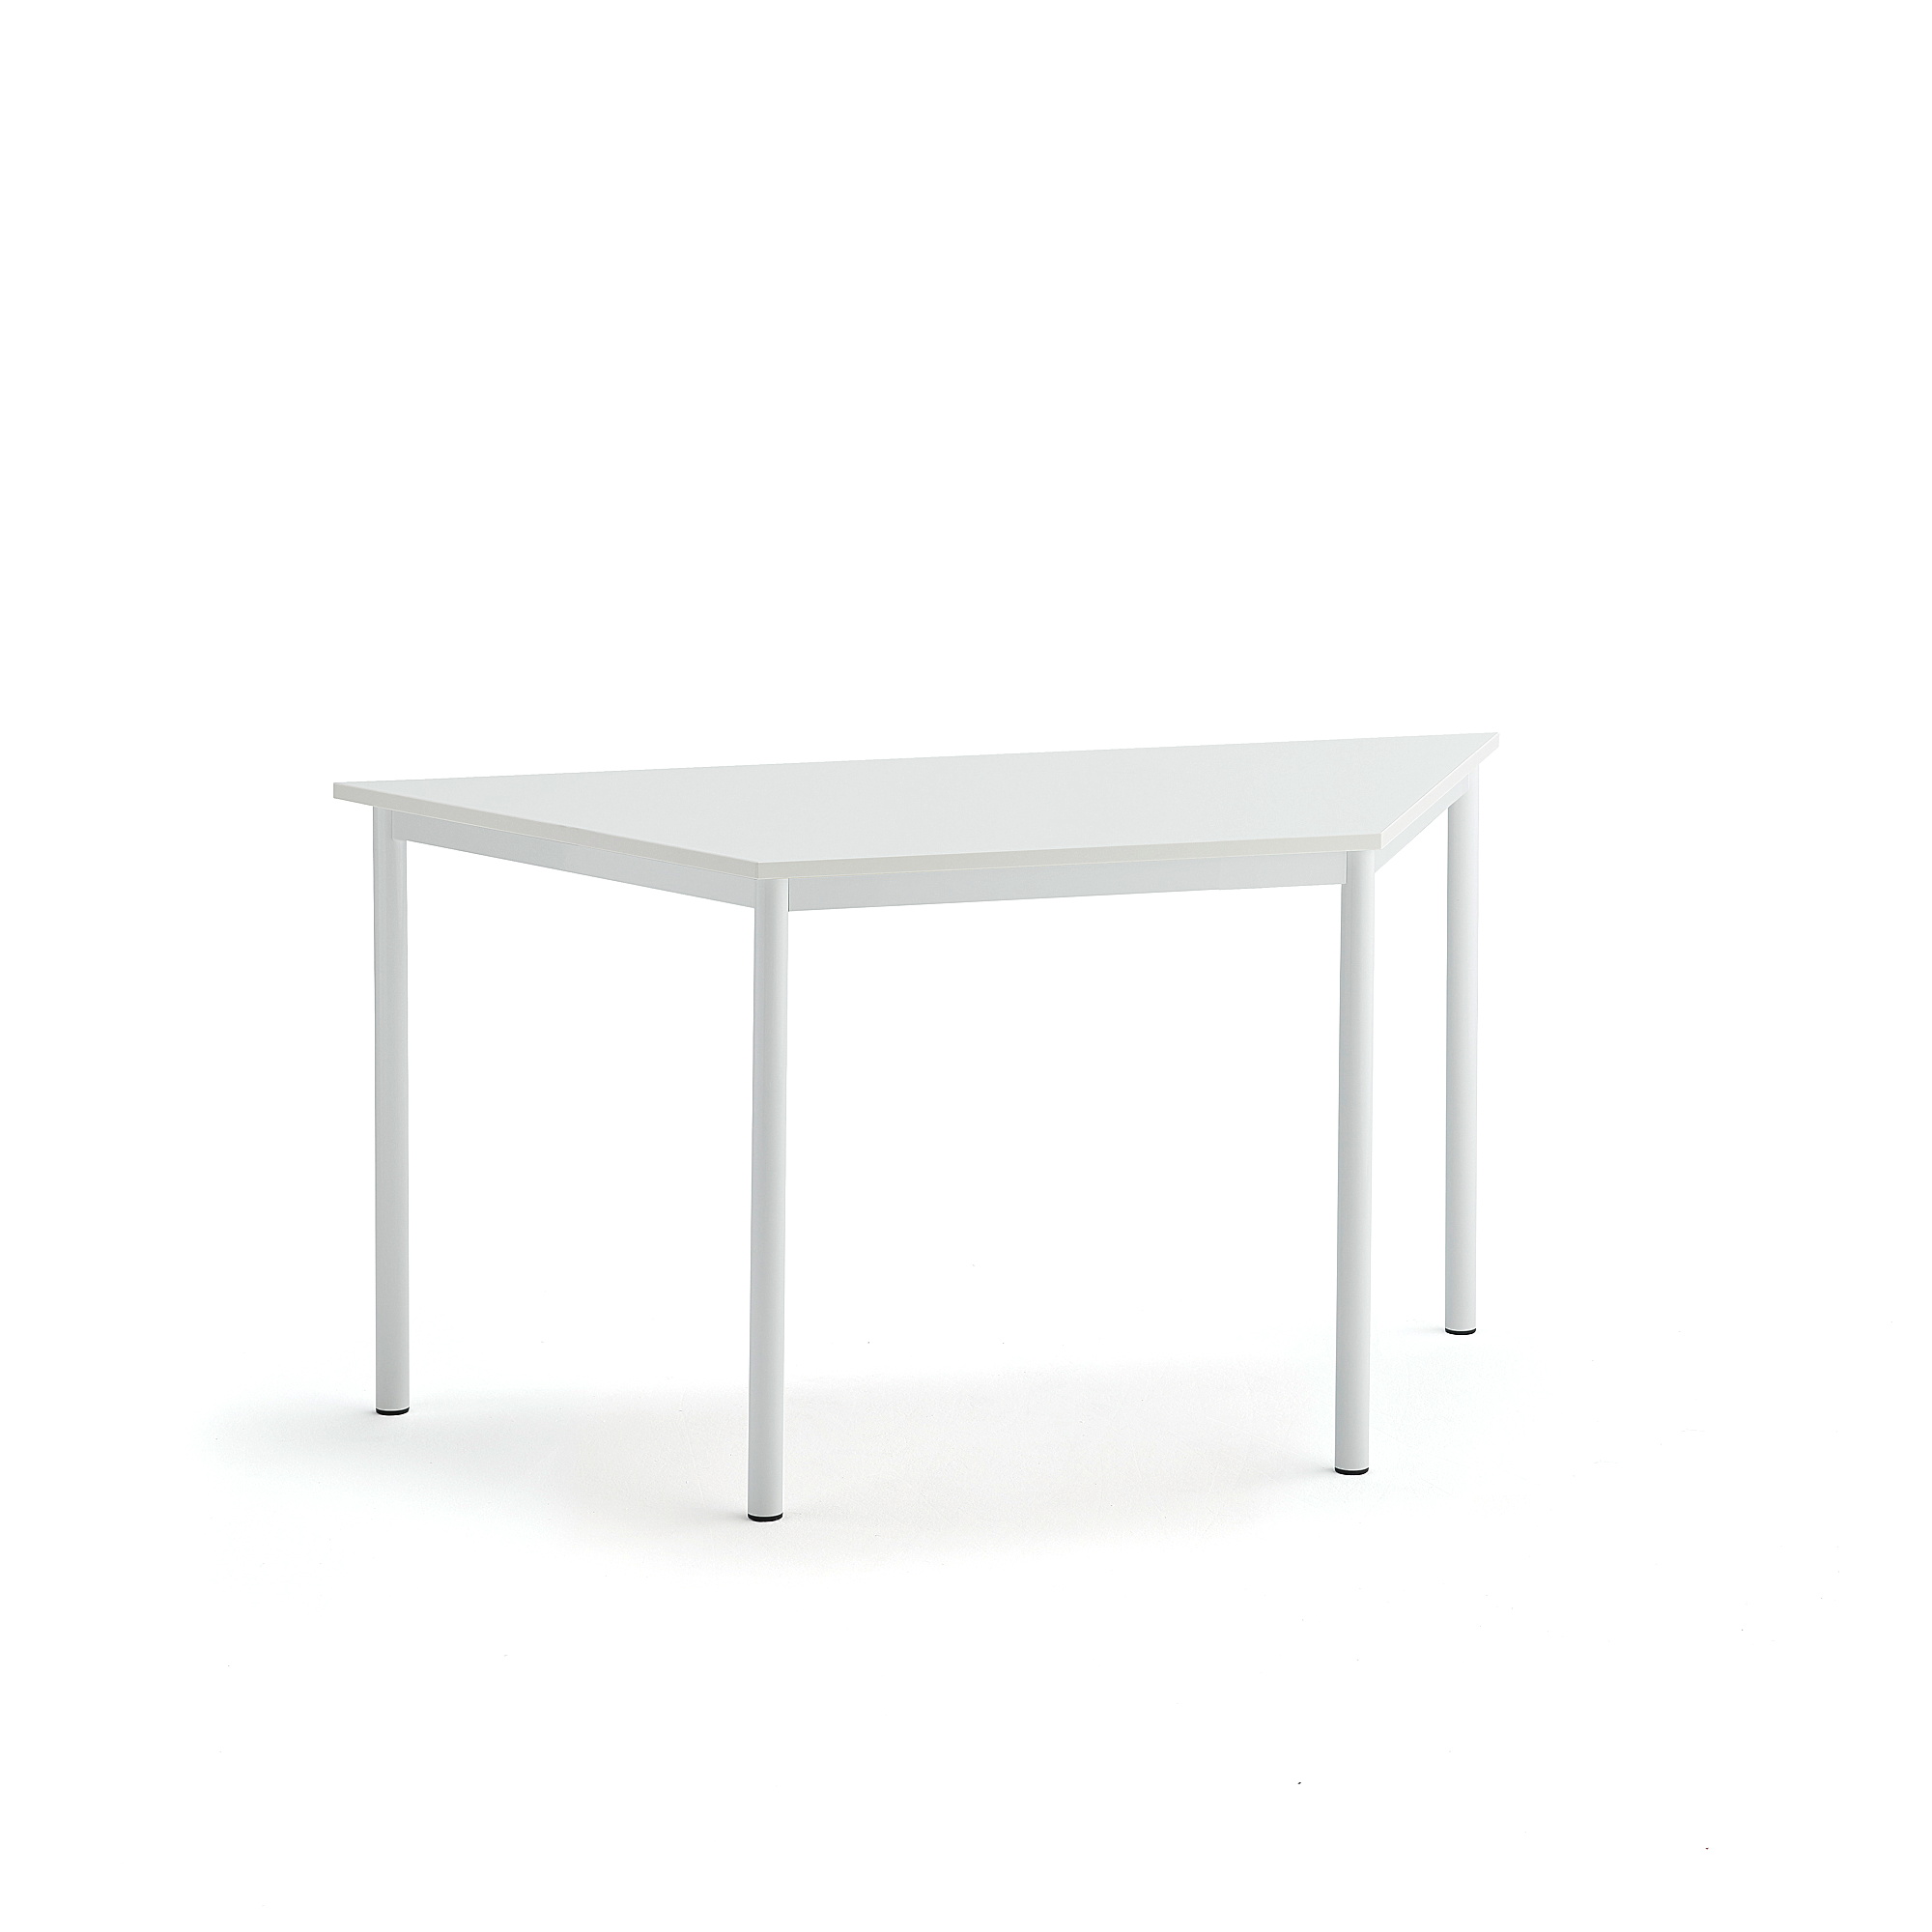 Stůl SONITUS TRAPETS, 1400x700x720 mm, bílé nohy, HPL deska tlumící hluk, bílá